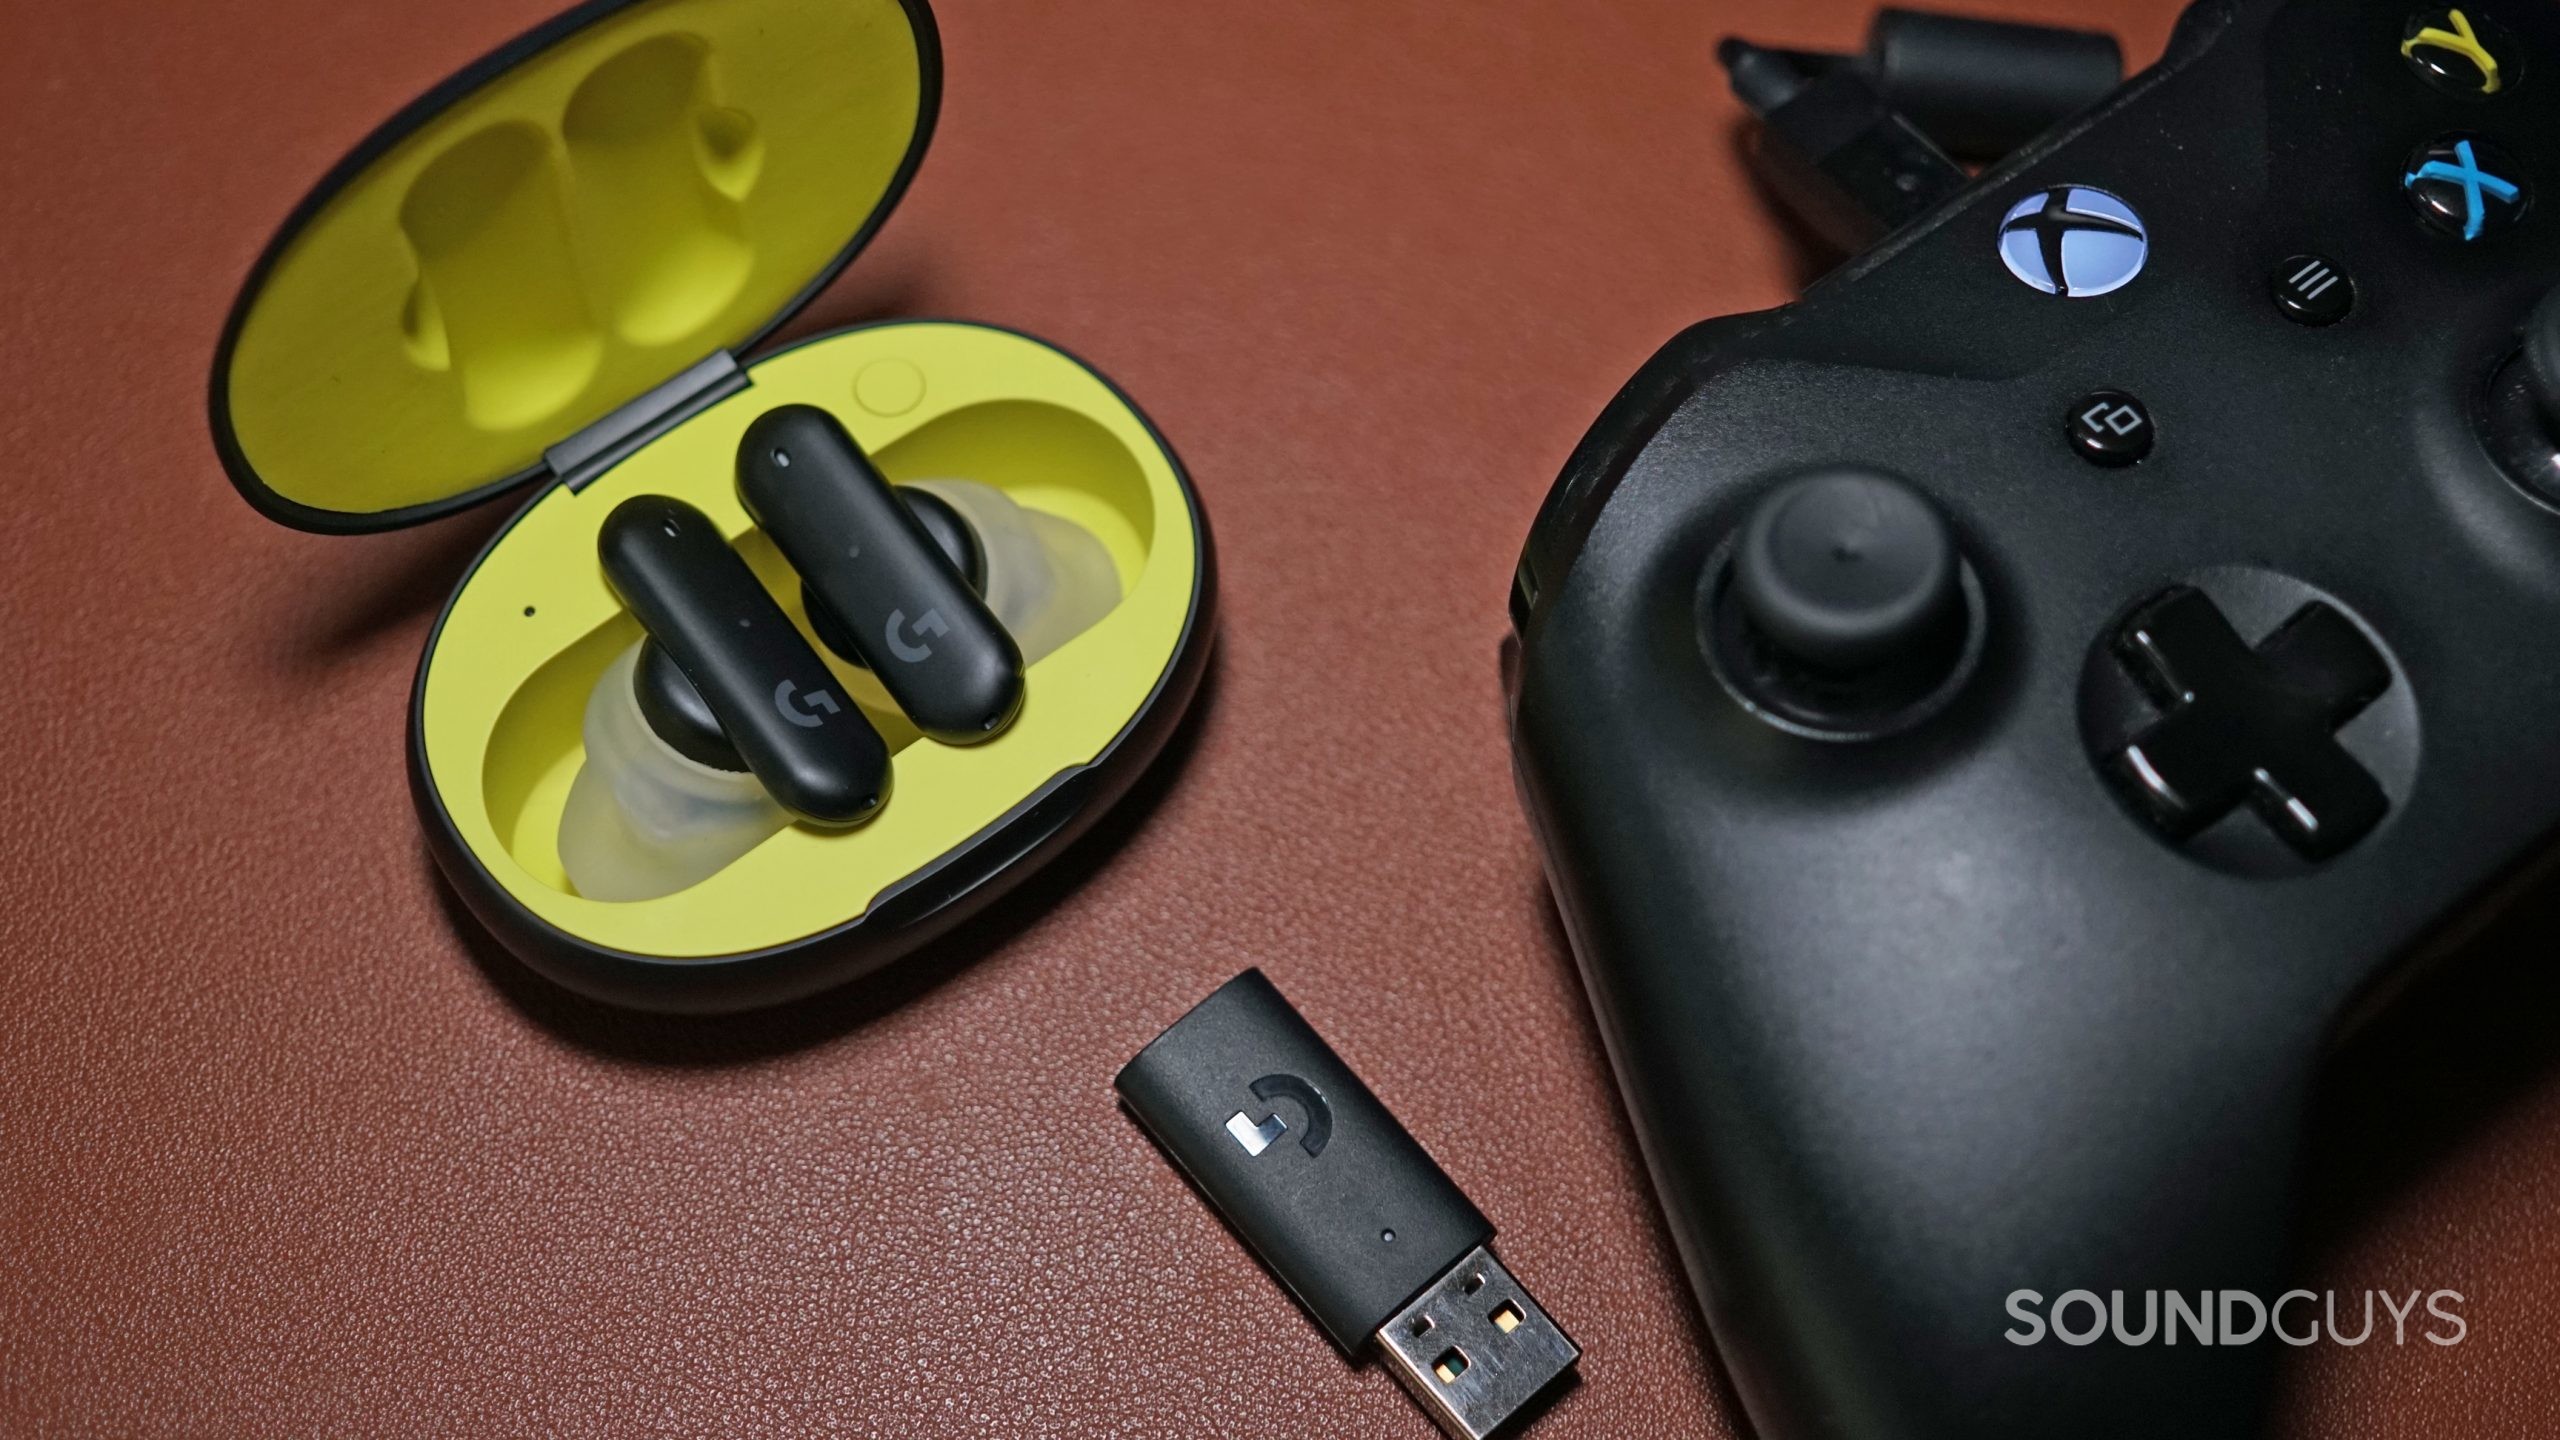 Logitech G се вписва в слушалките си в калъфа за зареждане до USB Dongle и контролер Xbox One